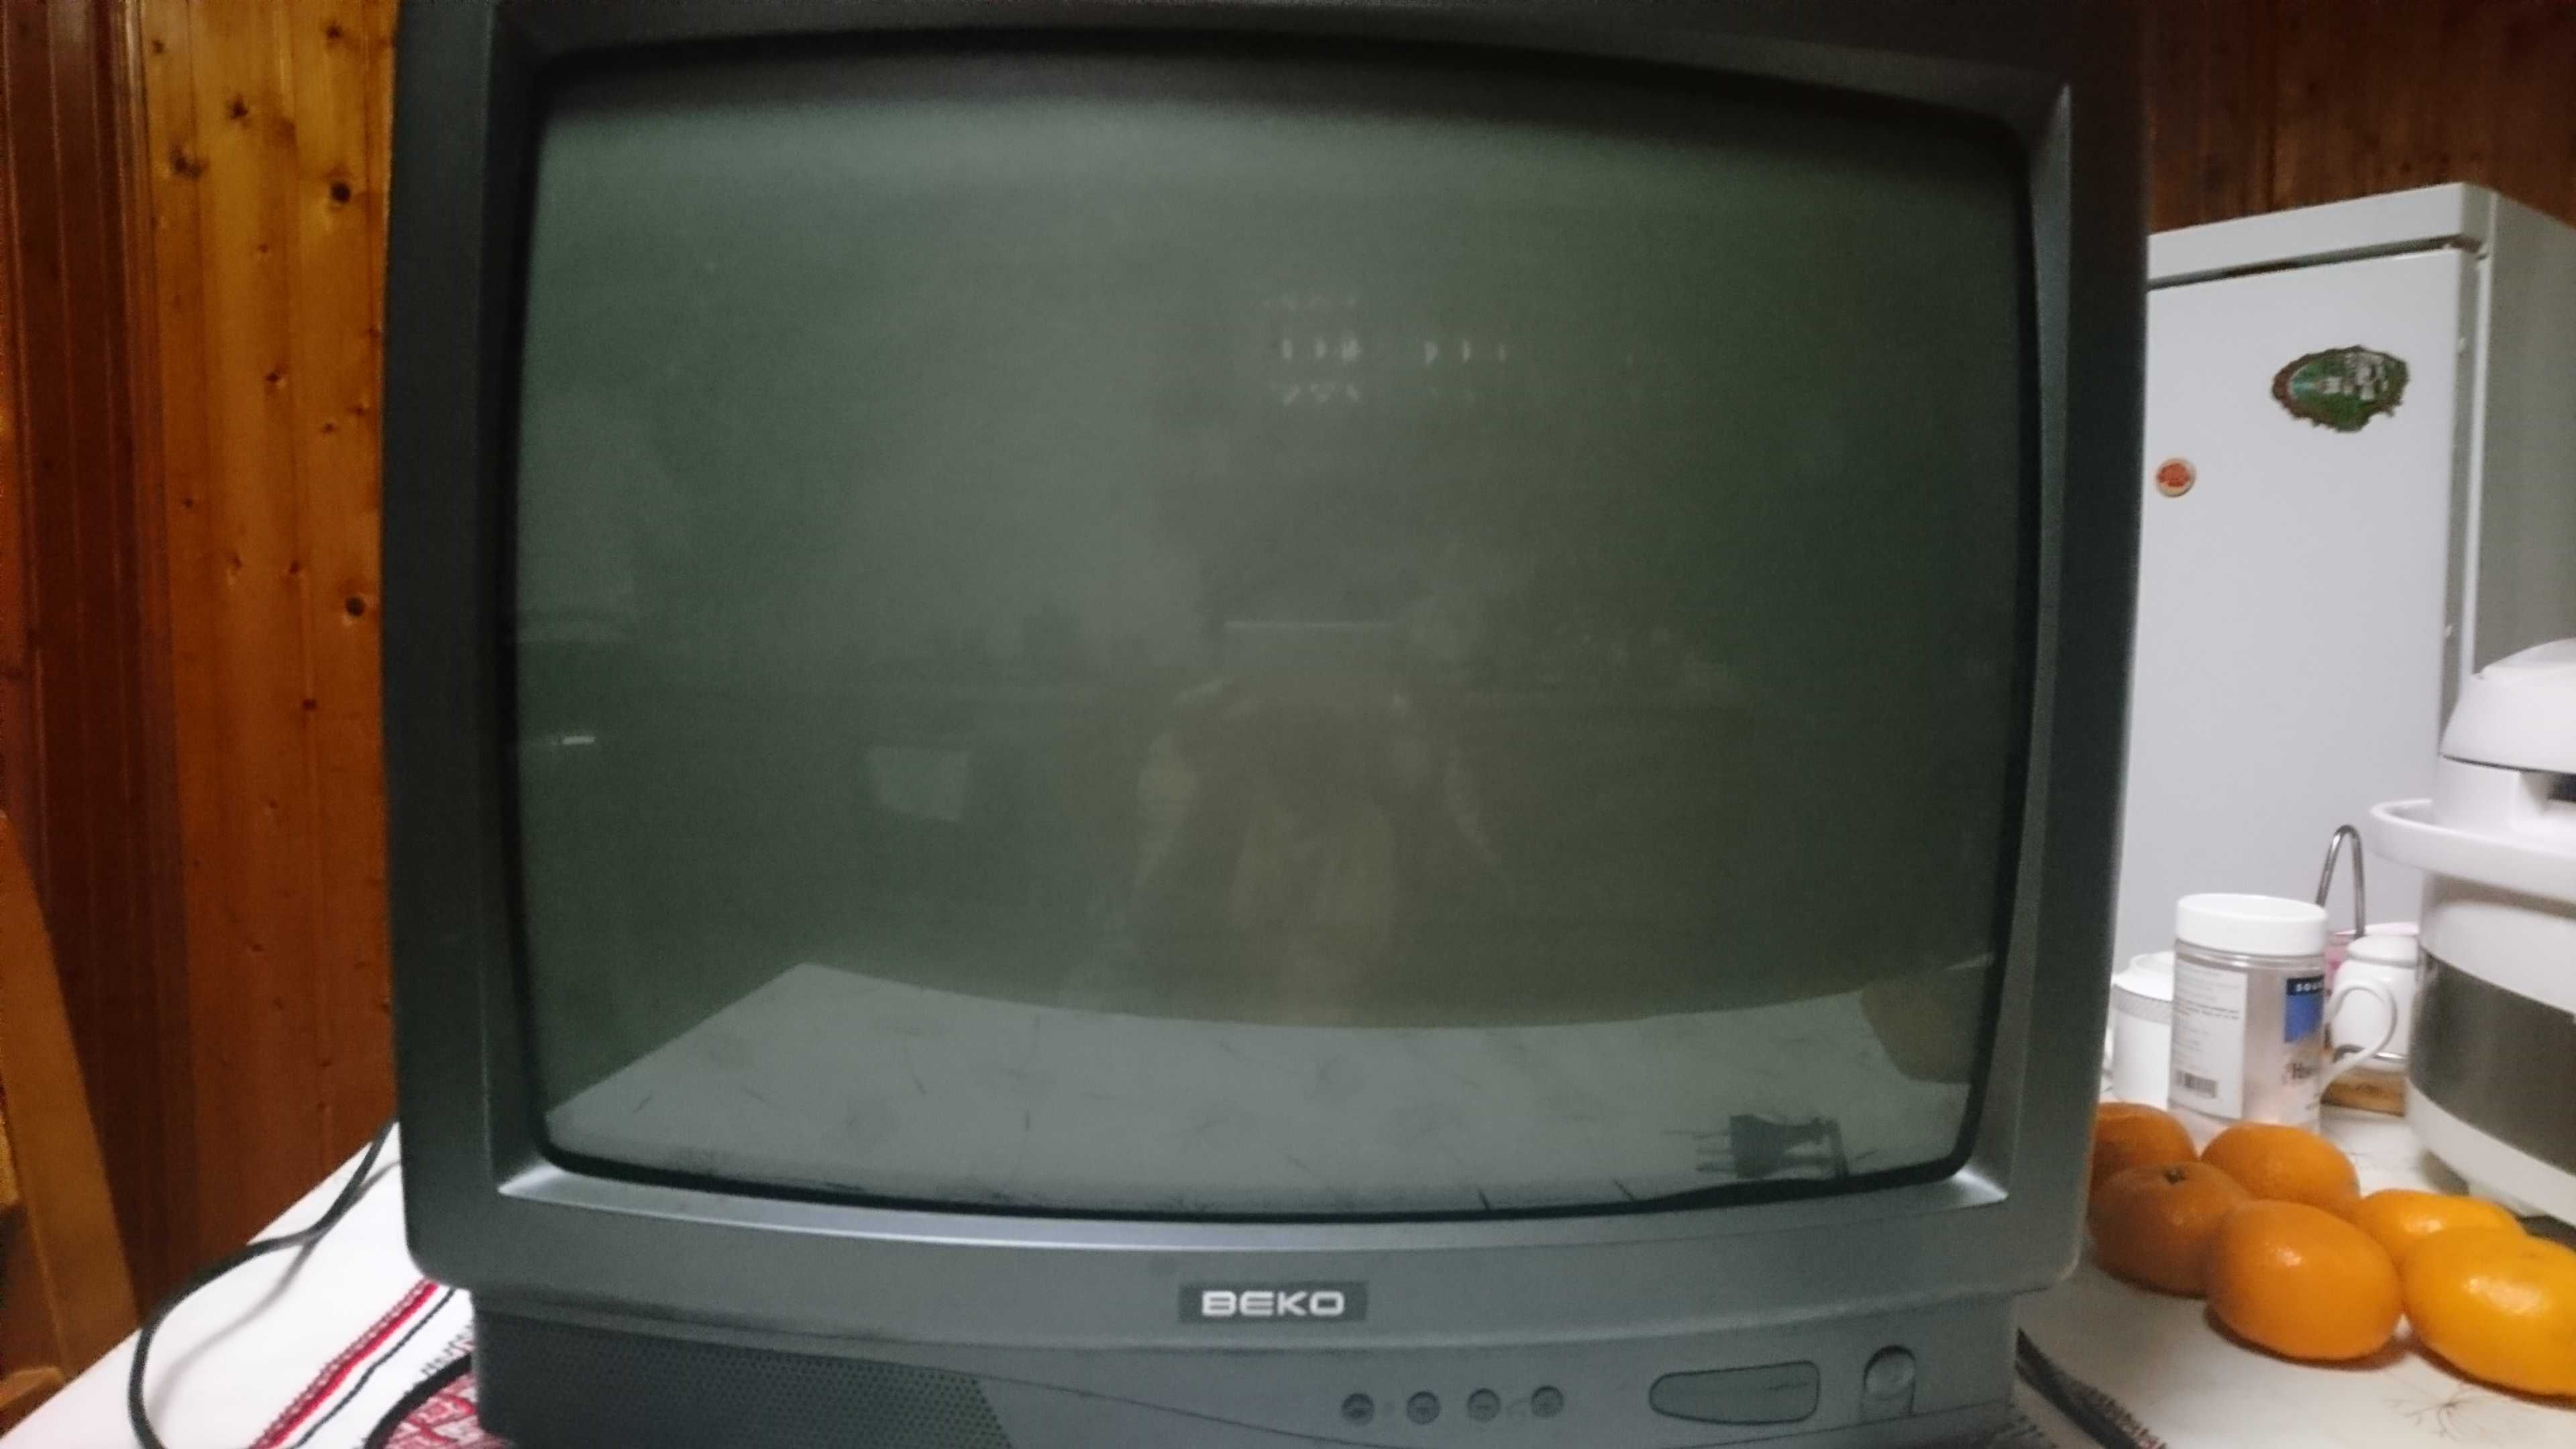 Рабочий телевизор   фирмы BEKO, производство Турция .